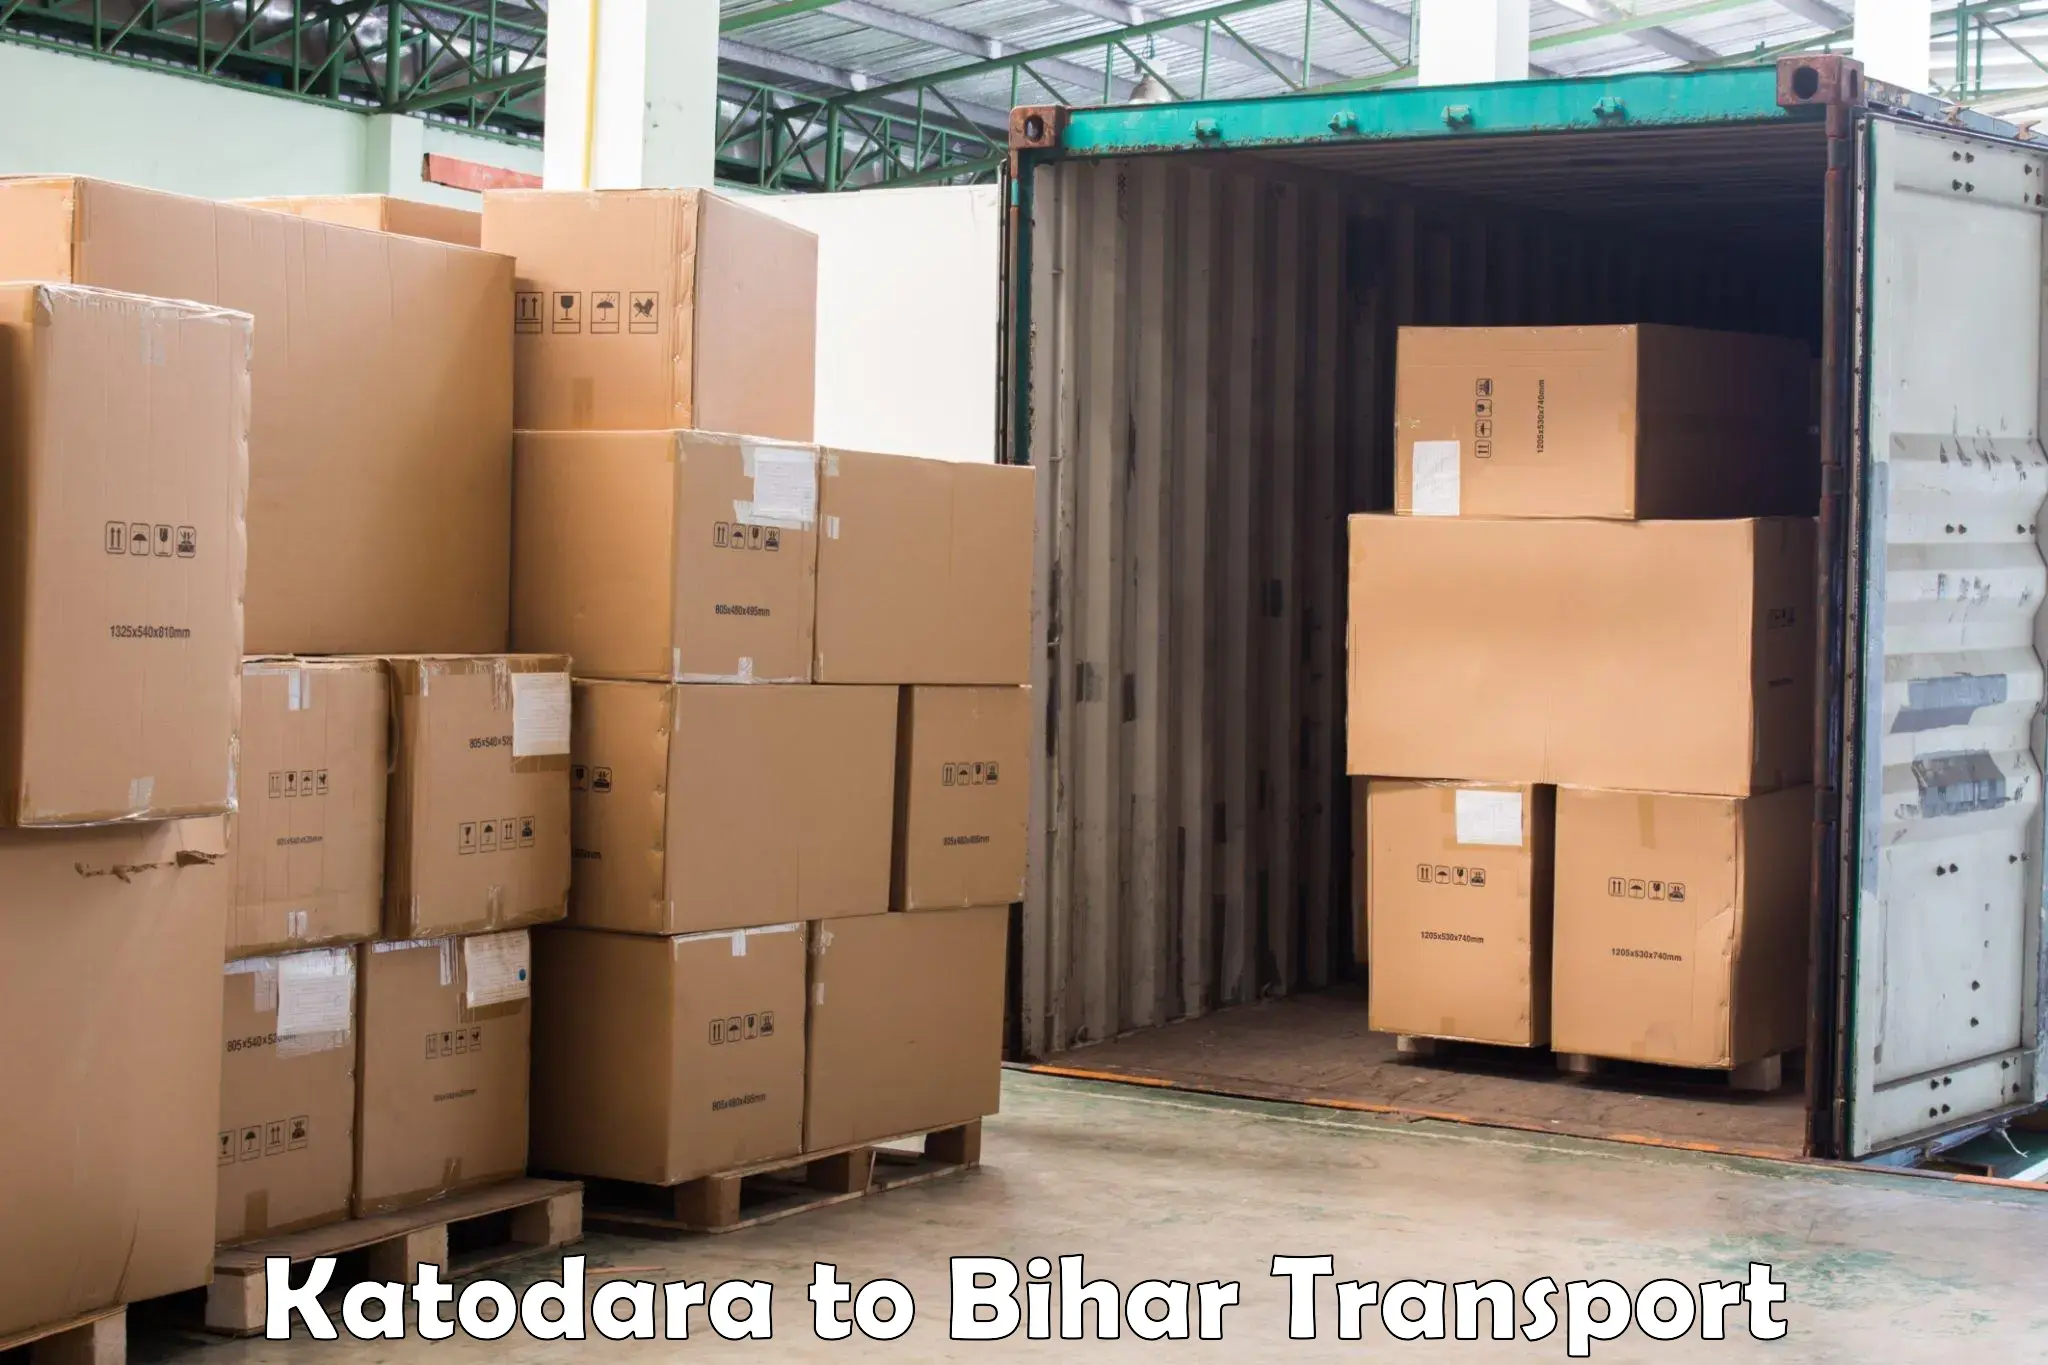 Interstate transport services Katodara to Jalalgarh